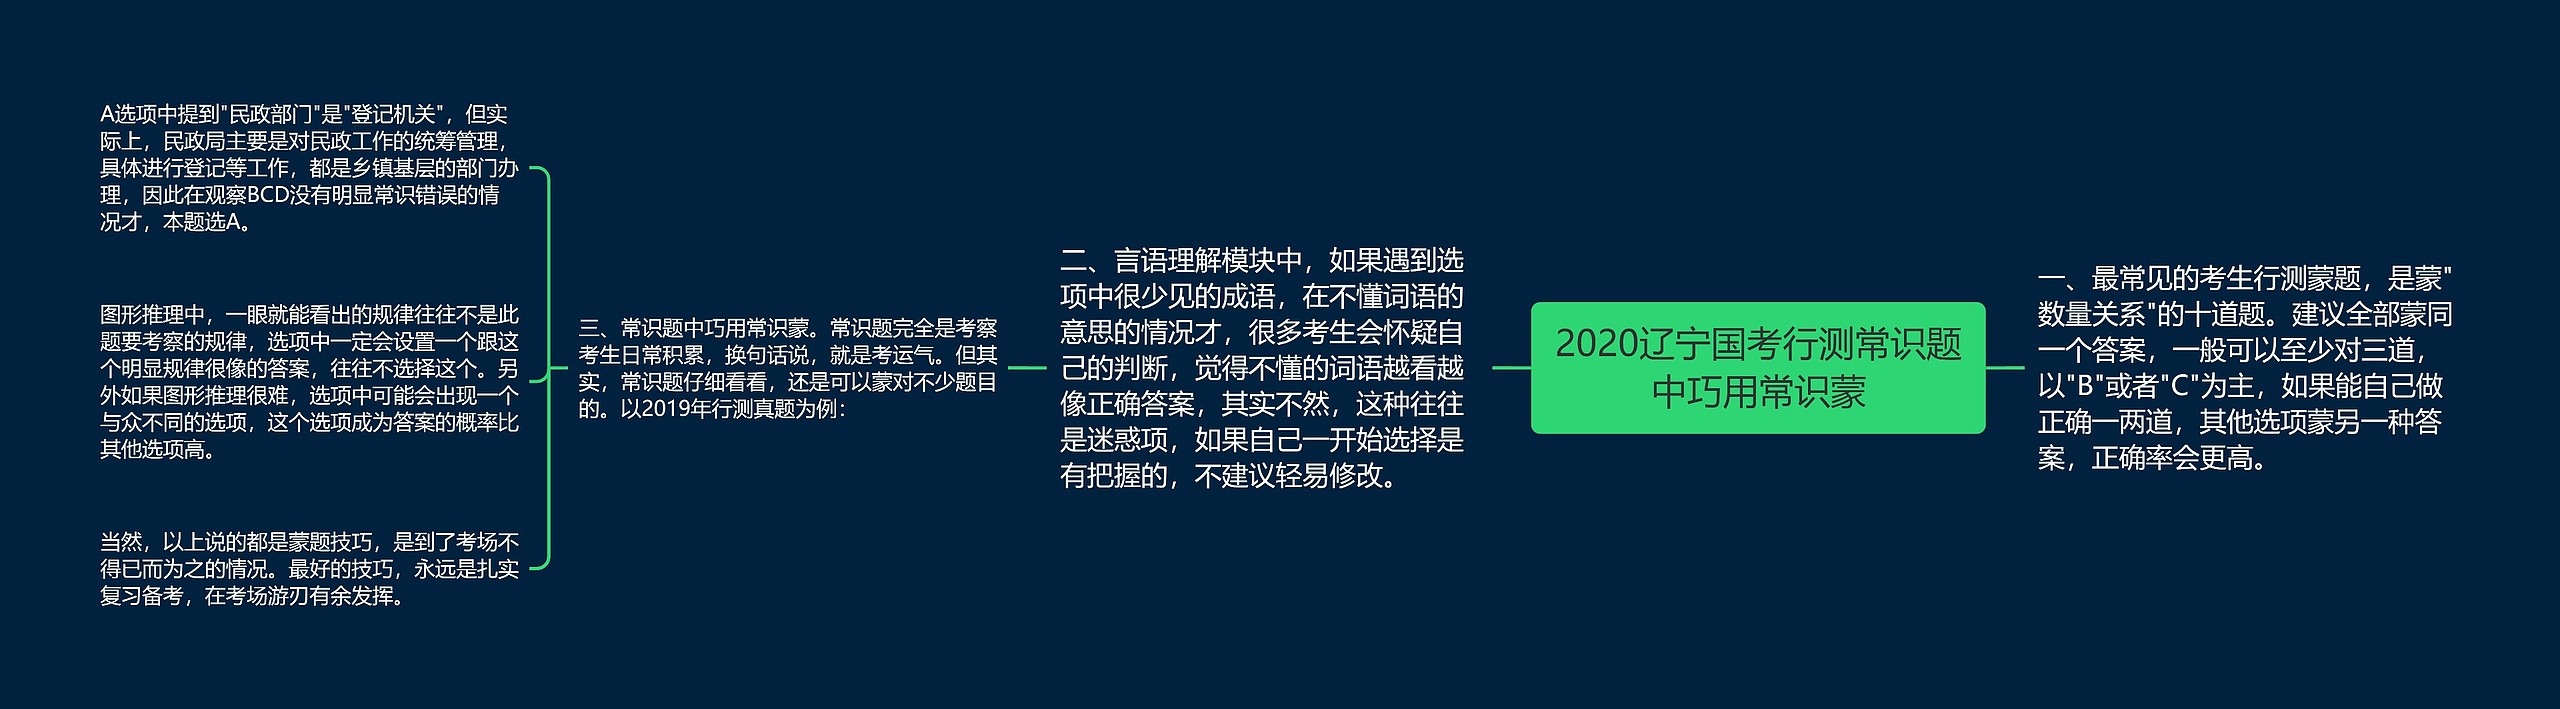 2020辽宁国考行测常识题中巧用常识蒙